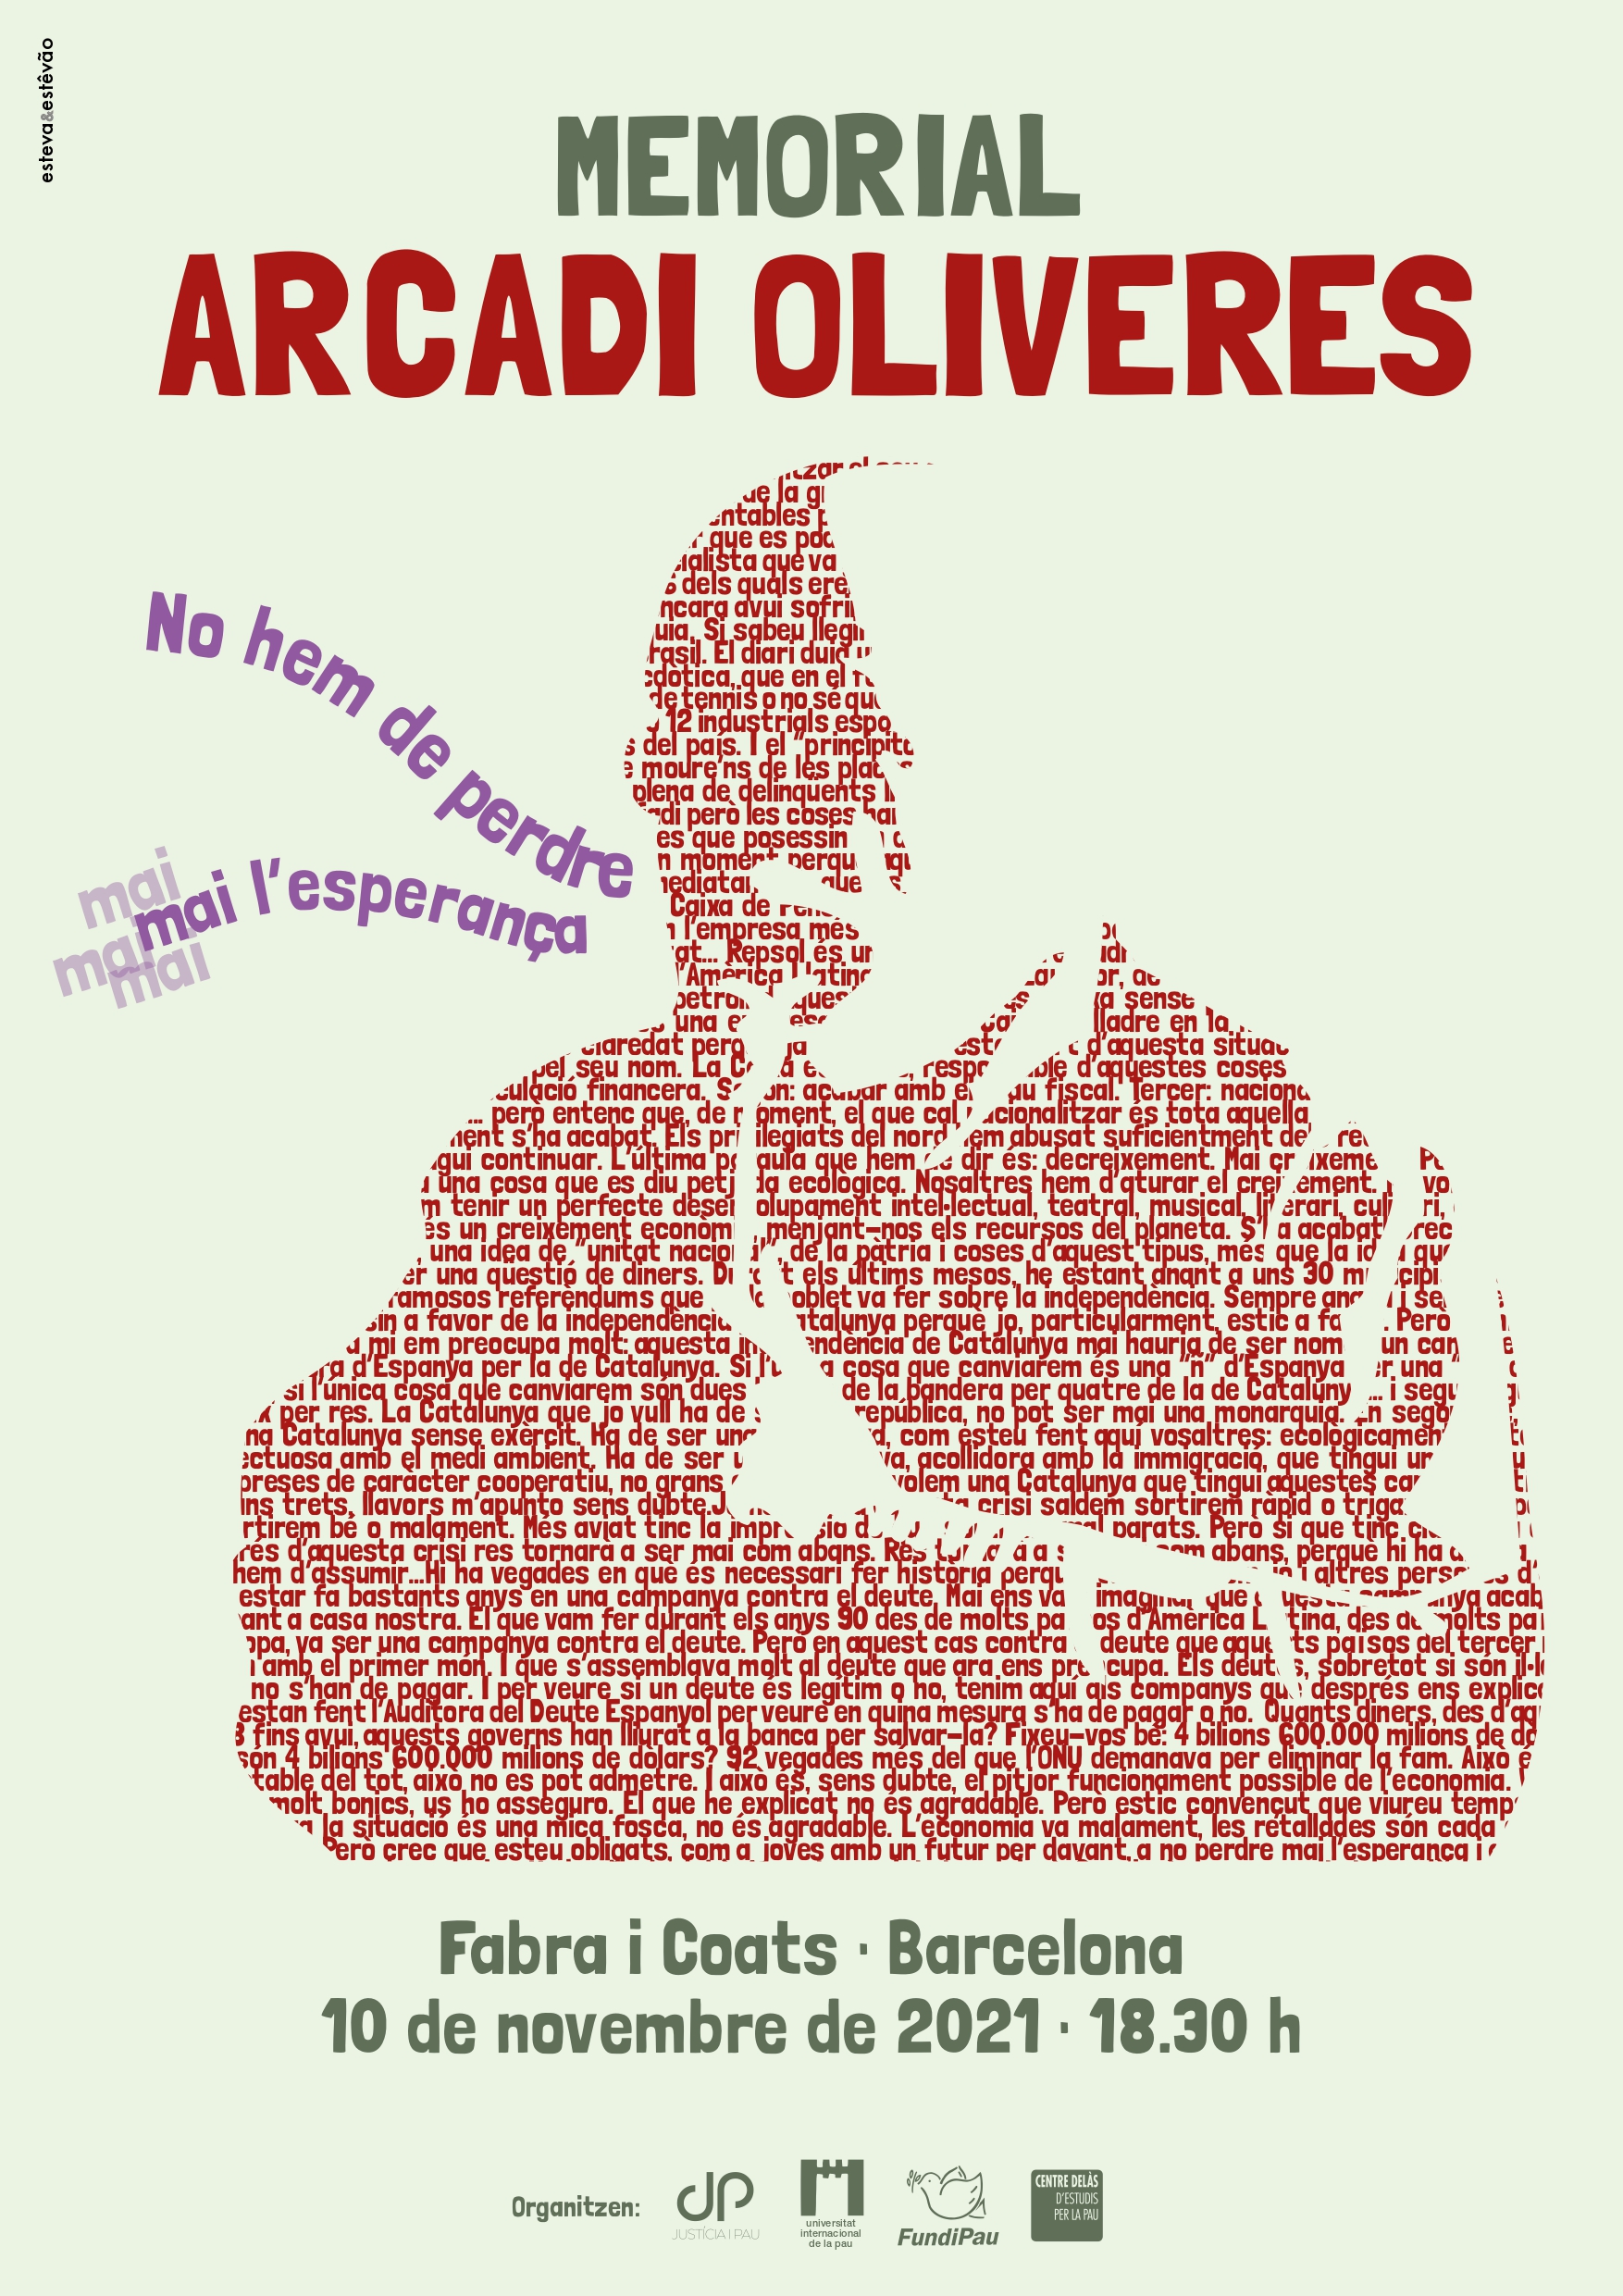 Las entidades de paz catalanas rendiremos homenaje a Arcadi Oliveres en un Memorial en Barcelona el próximo 10 de noviembre